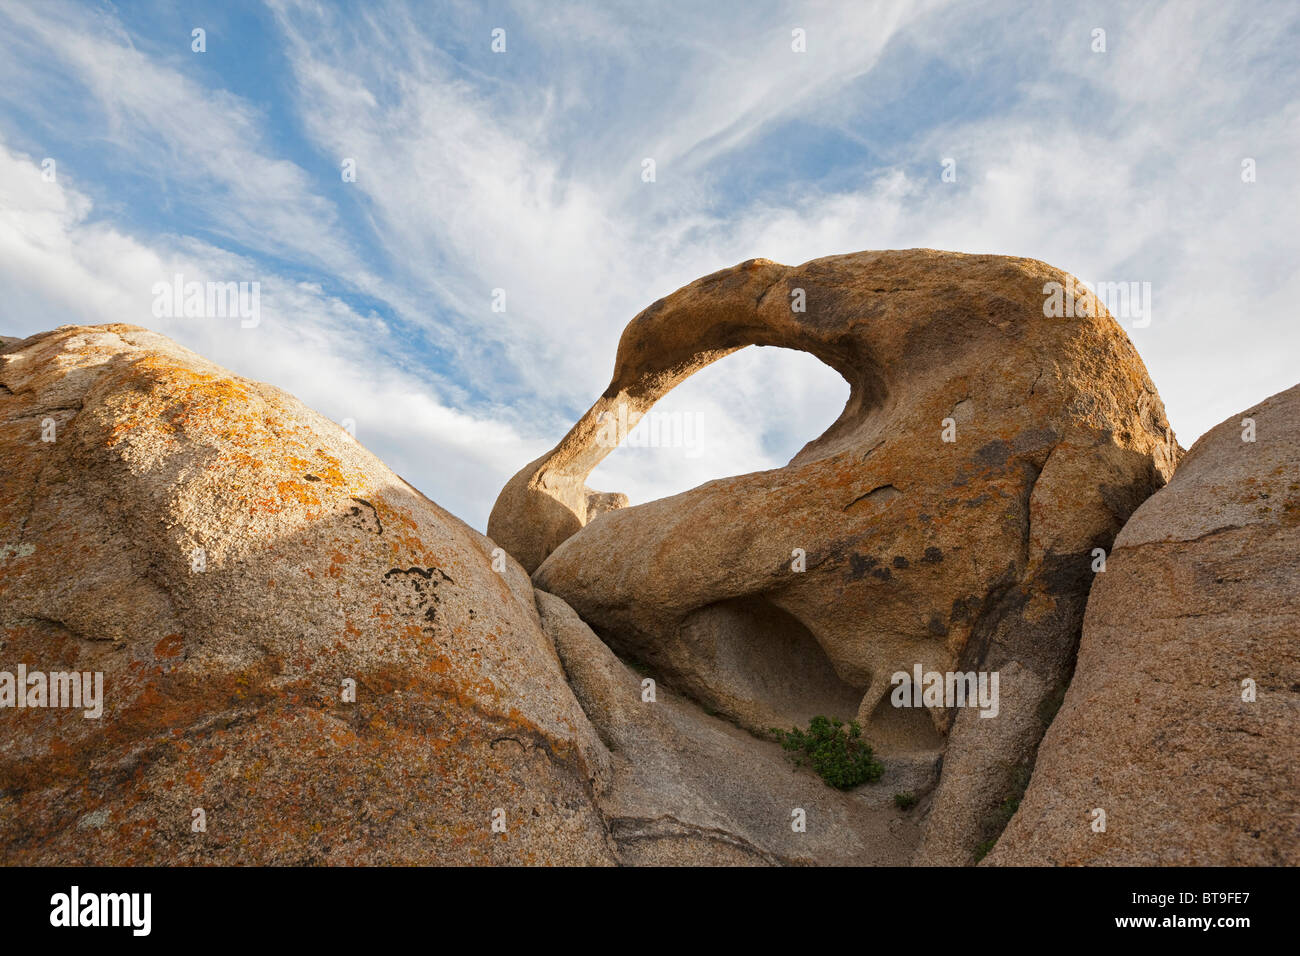 Mobius Arch, roccia naturale arch, Alabama Hills, Sierra Nevada, in California, Stati Uniti d'America Foto Stock